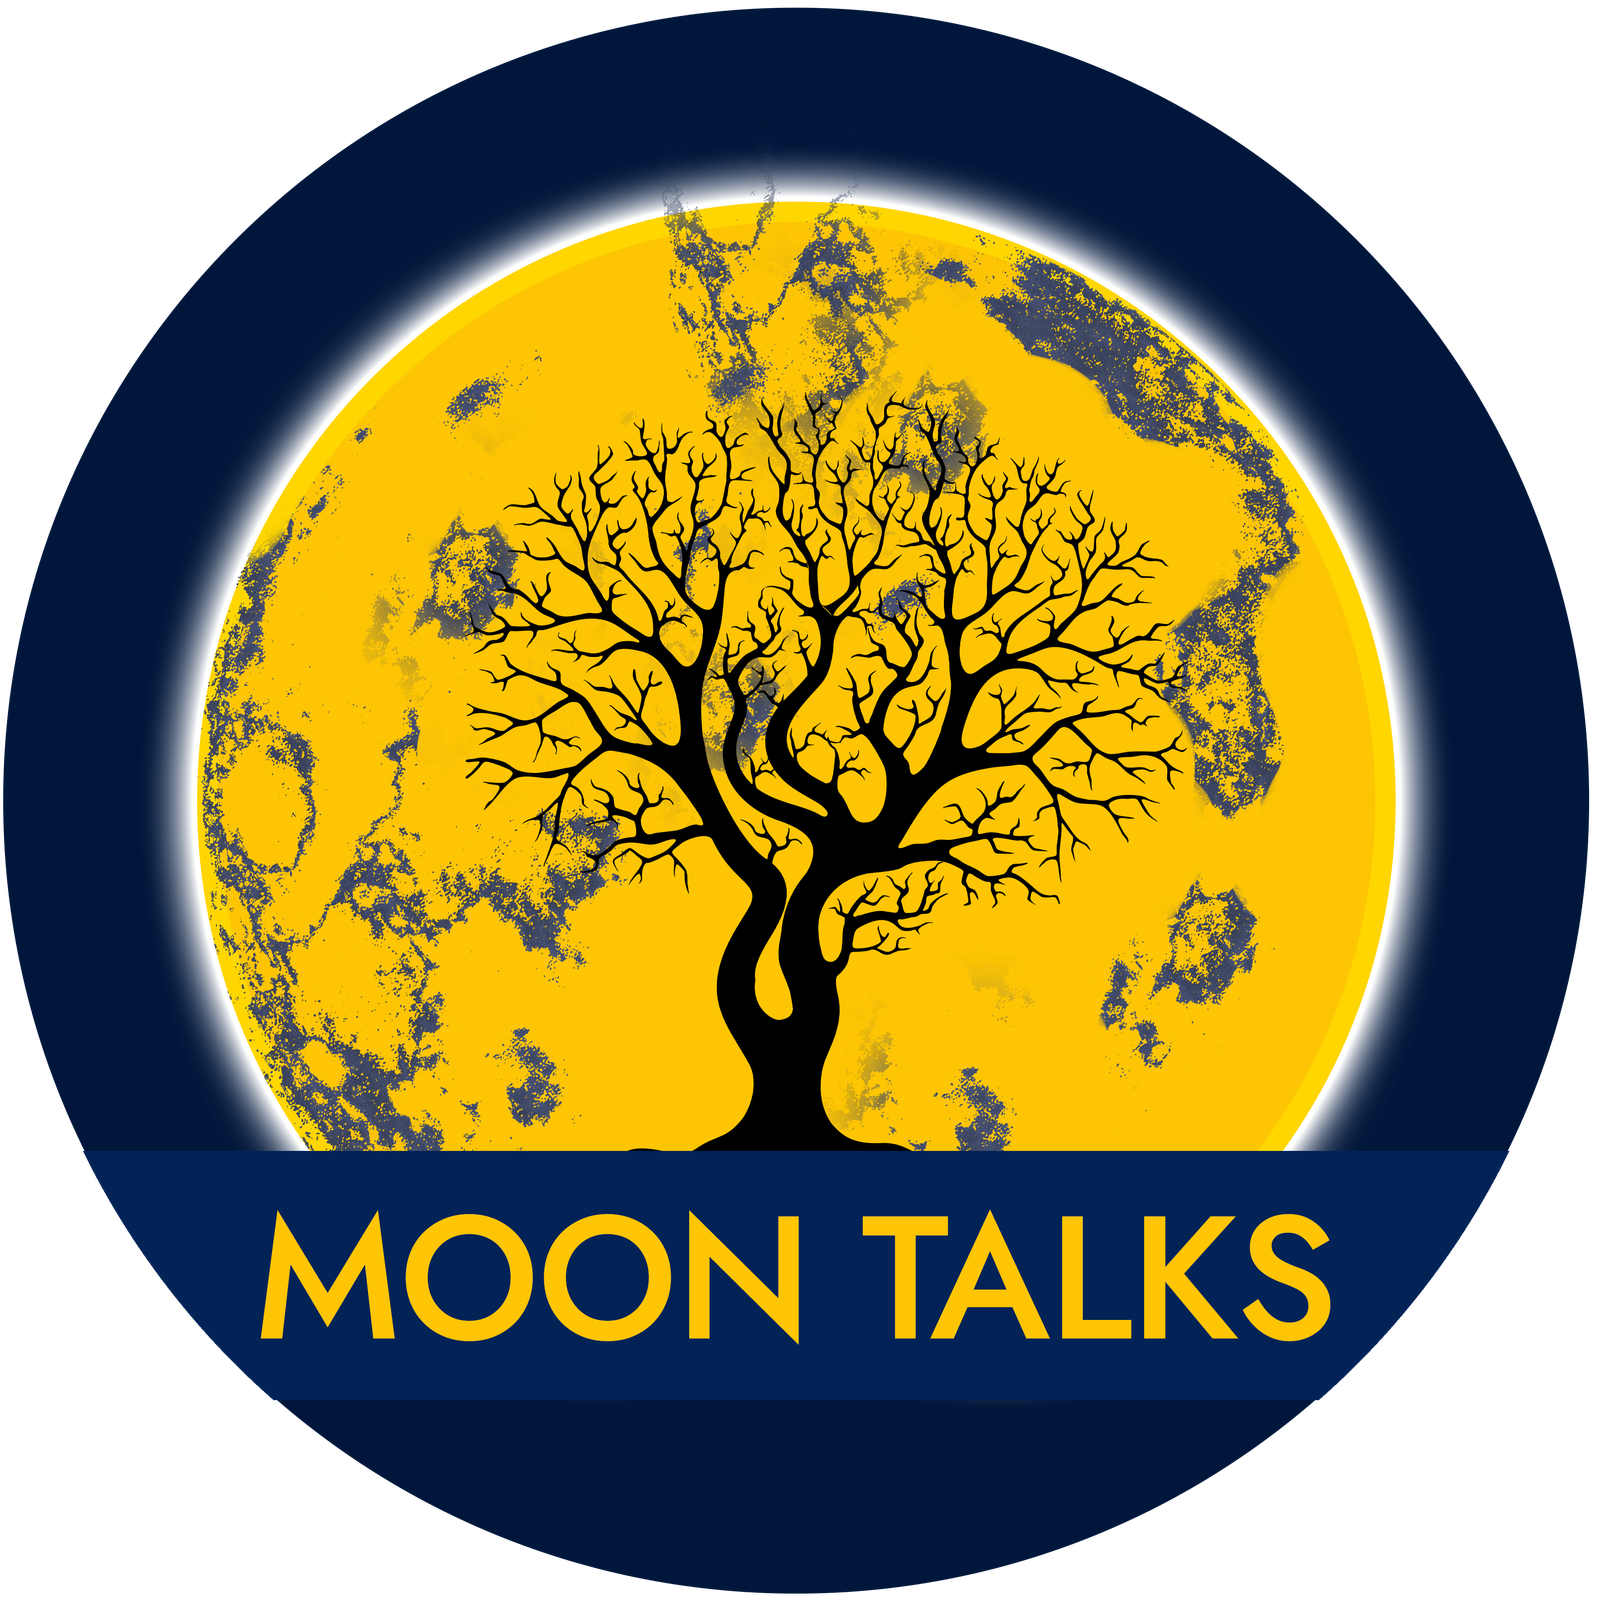 The Moon Talks